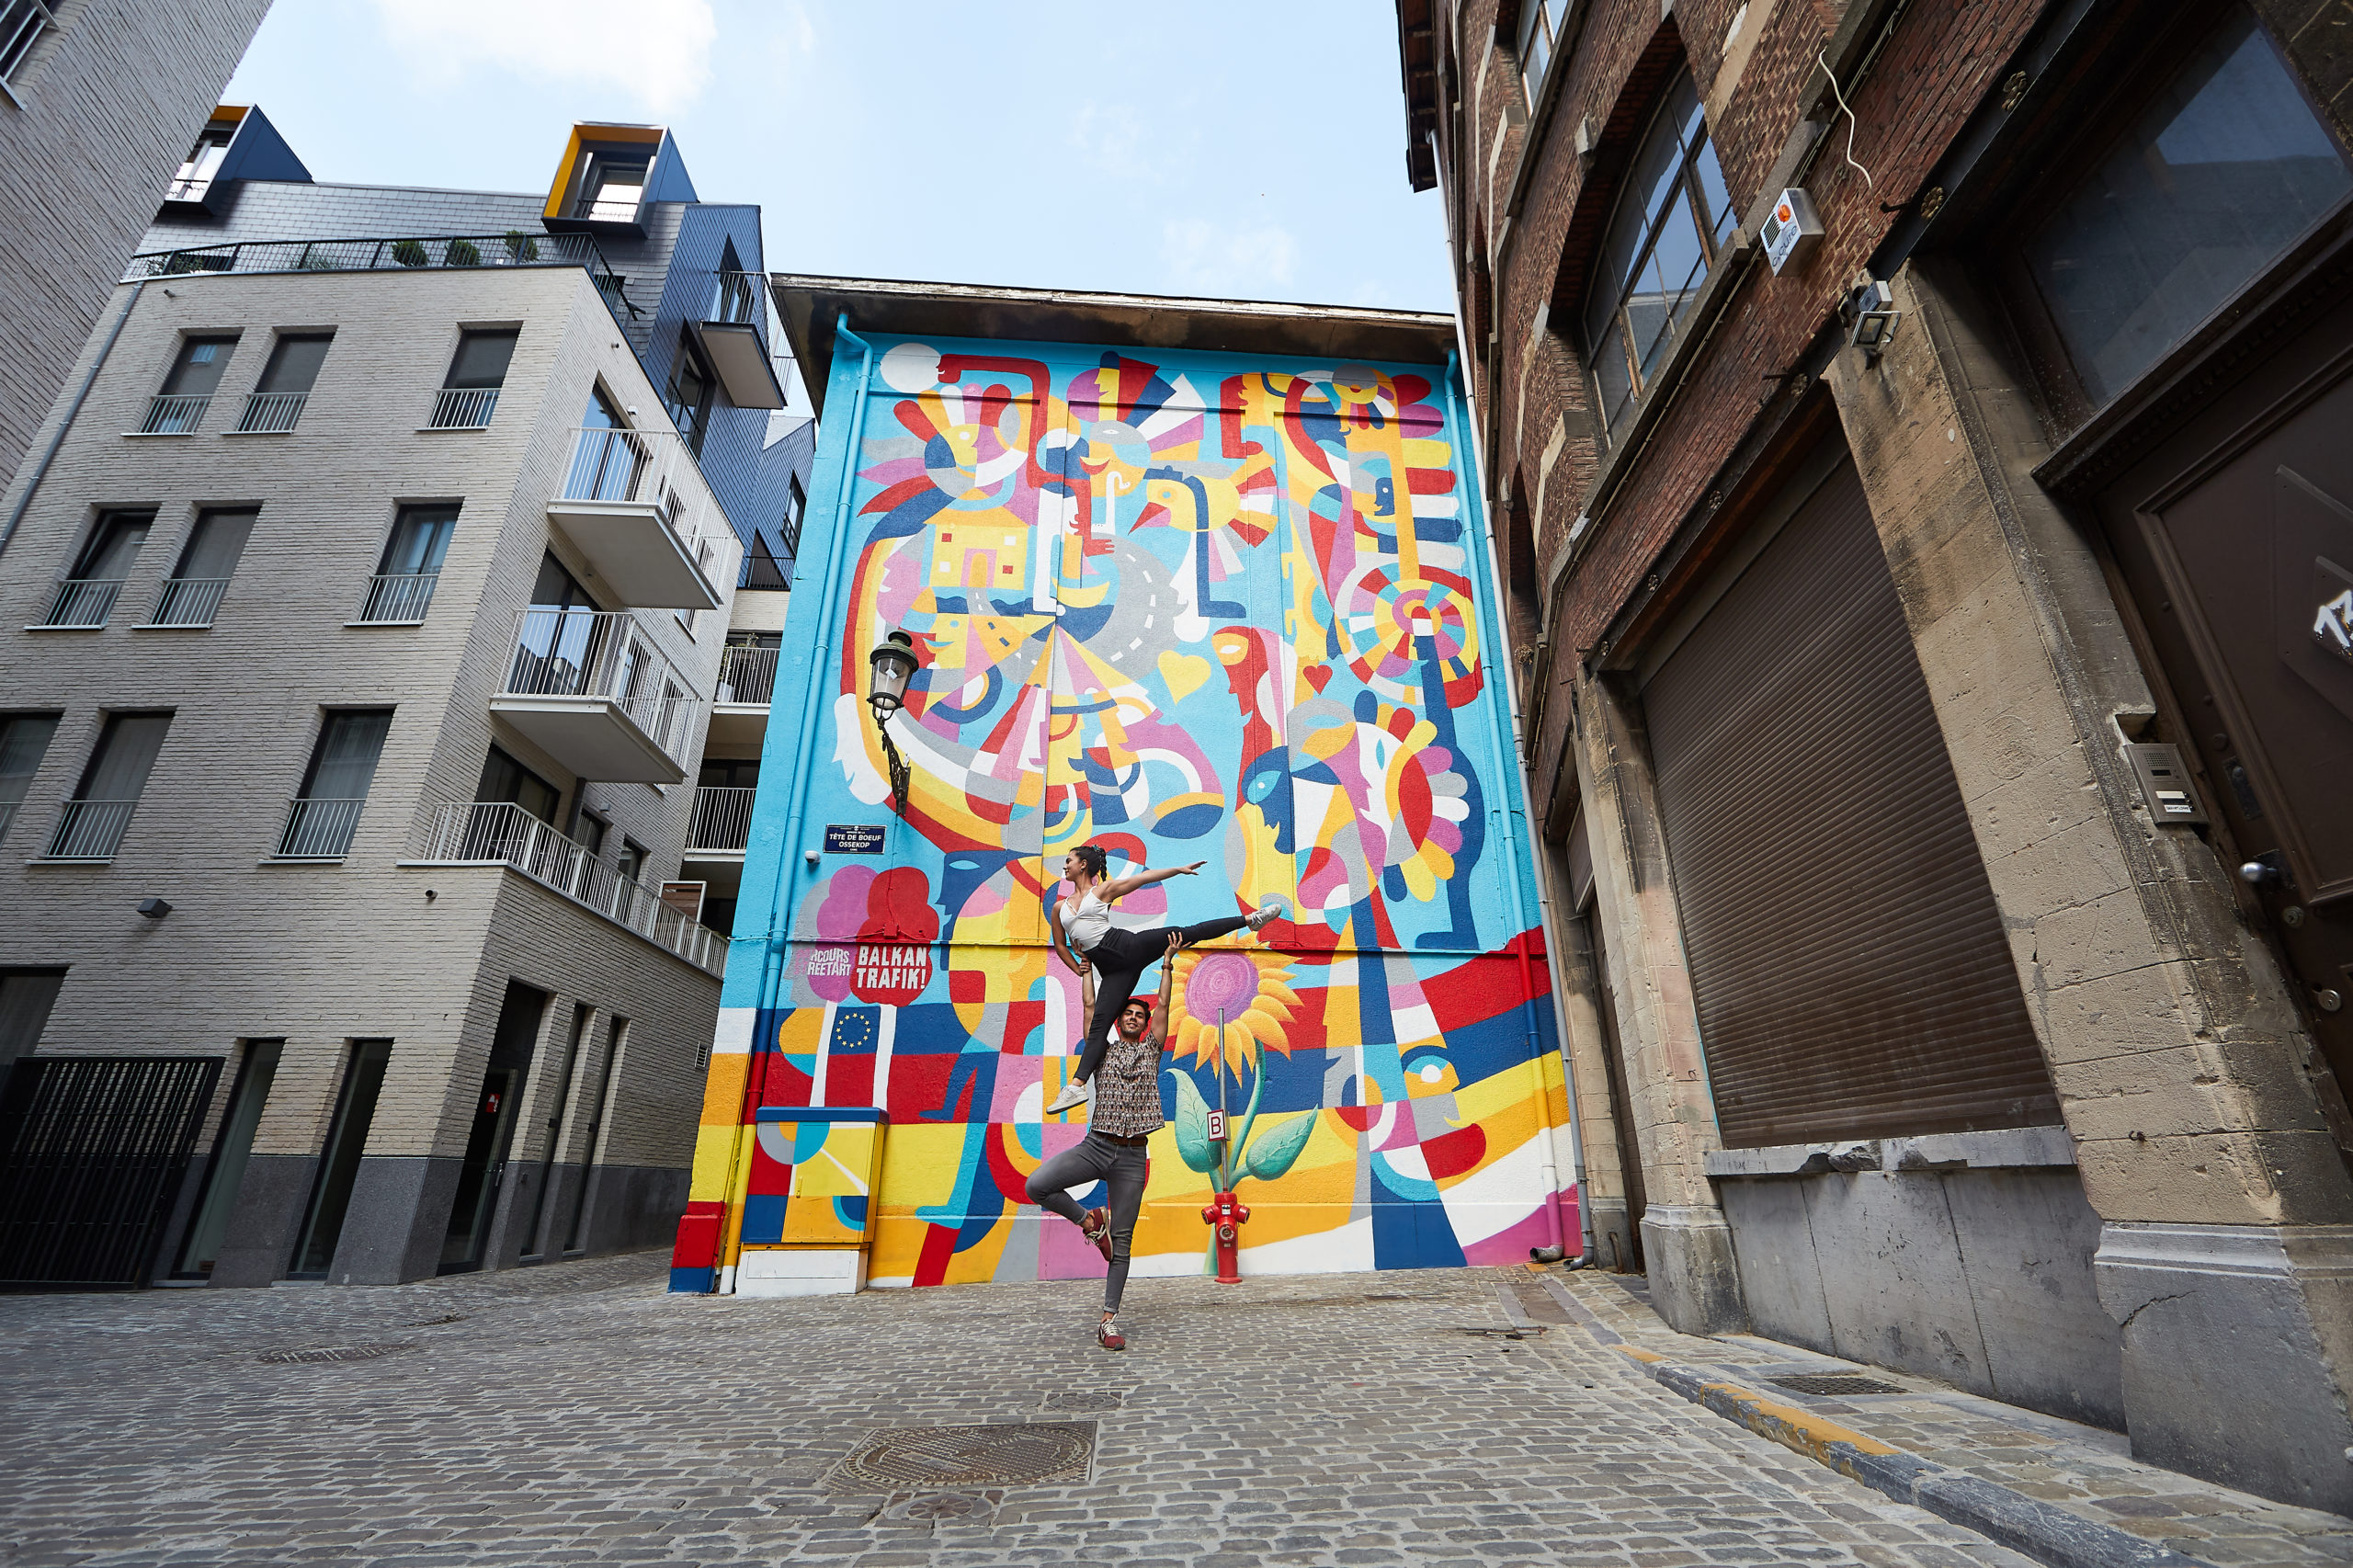 Deux jeunes adolescents effectuant une figure en pleine rue devant un mur très coloré